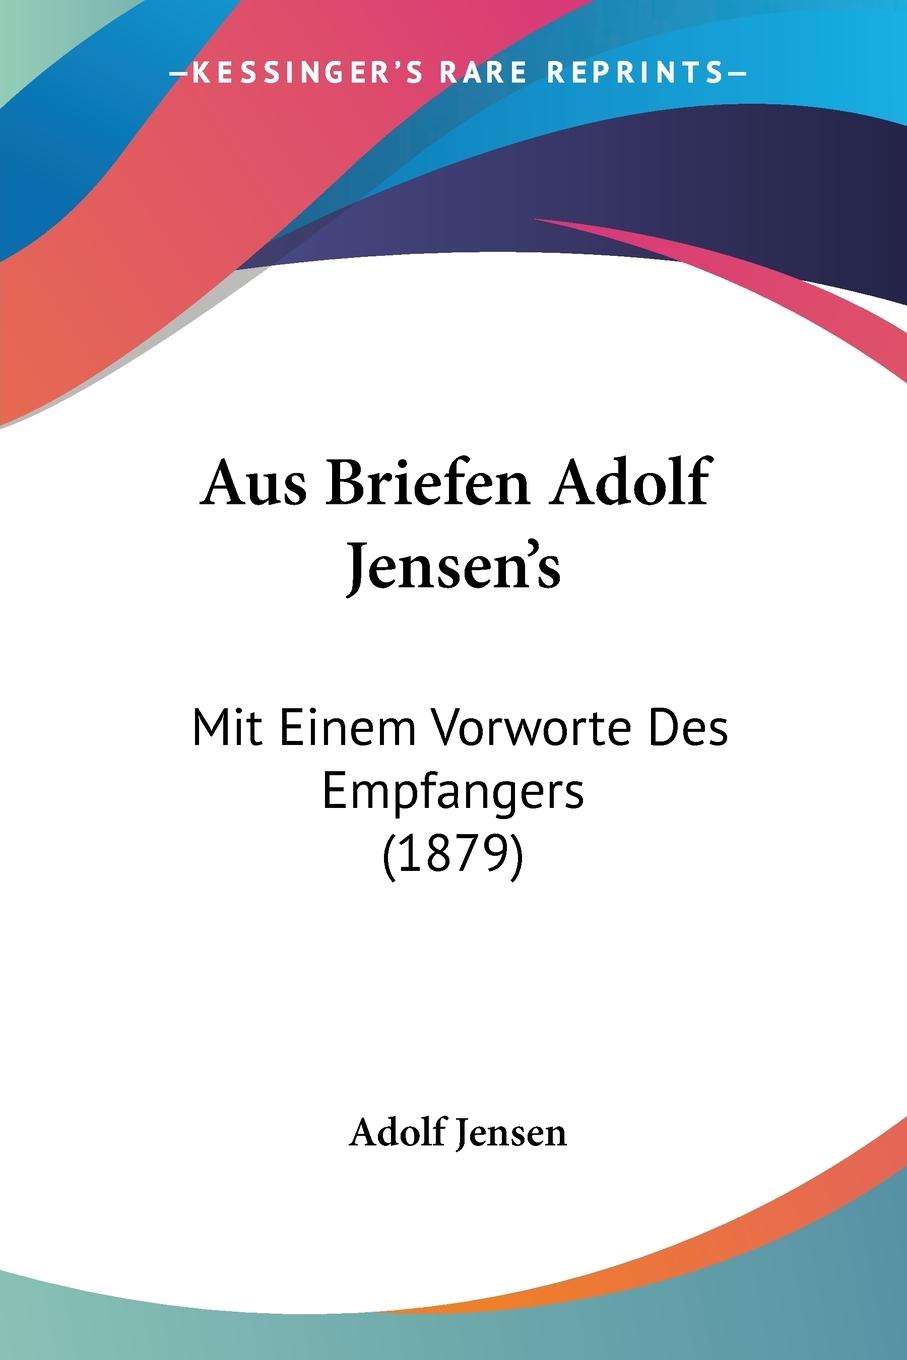 Aus Briefen Adolf Jensen s - Jensen, Adolf